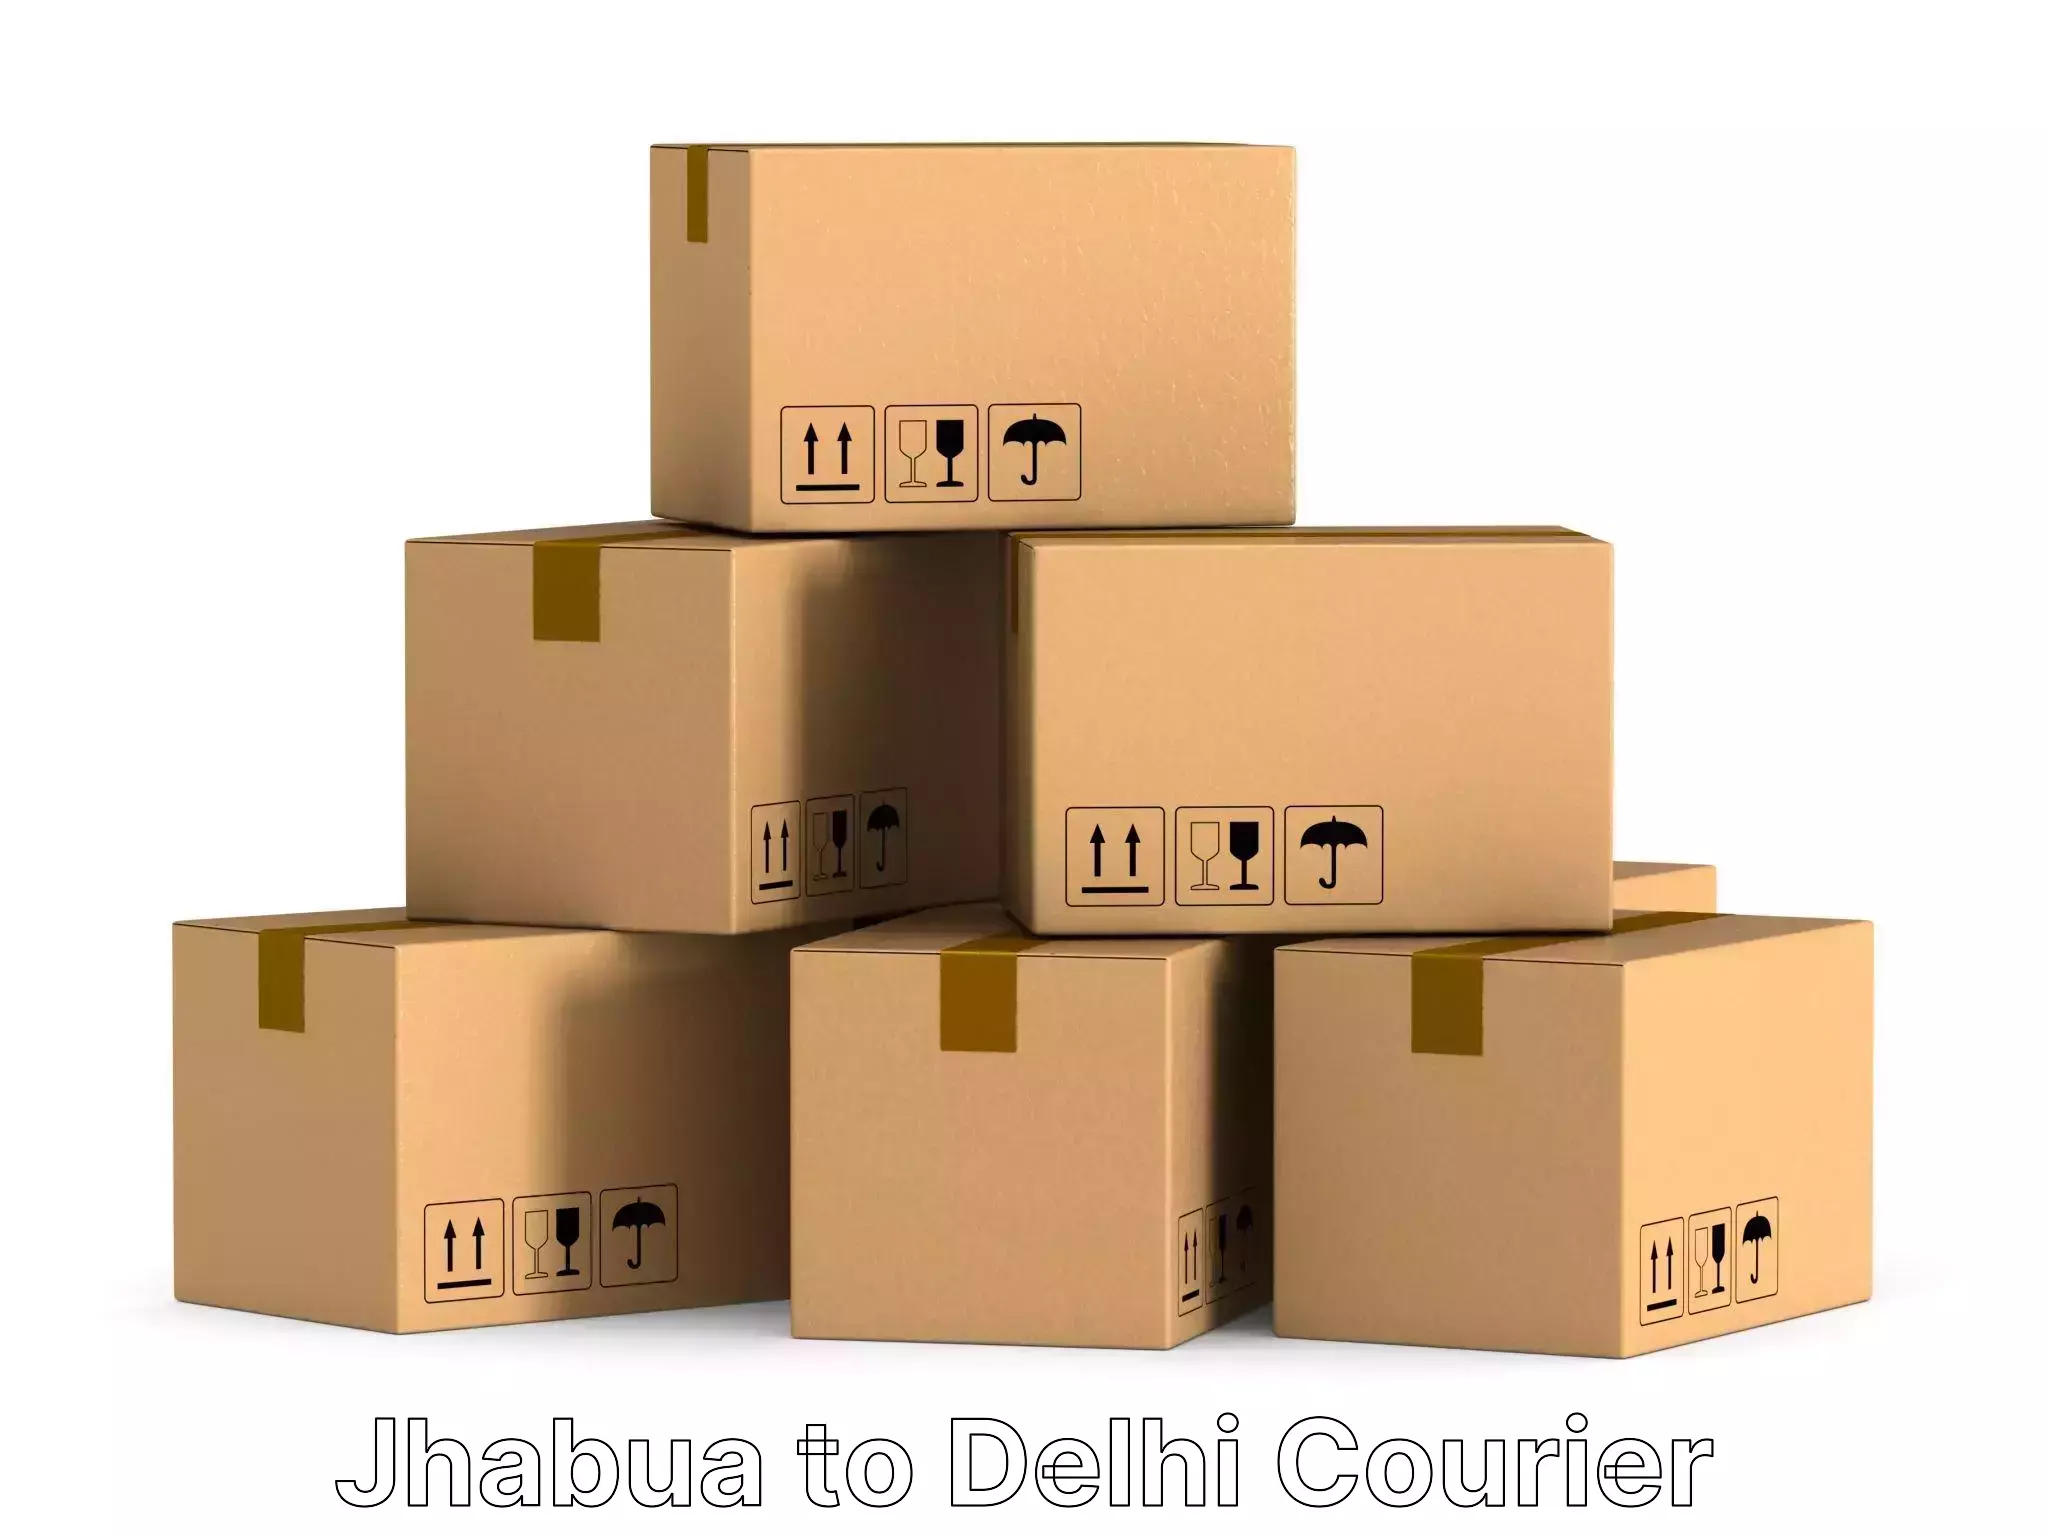 Furniture relocation experts Jhabua to Delhi